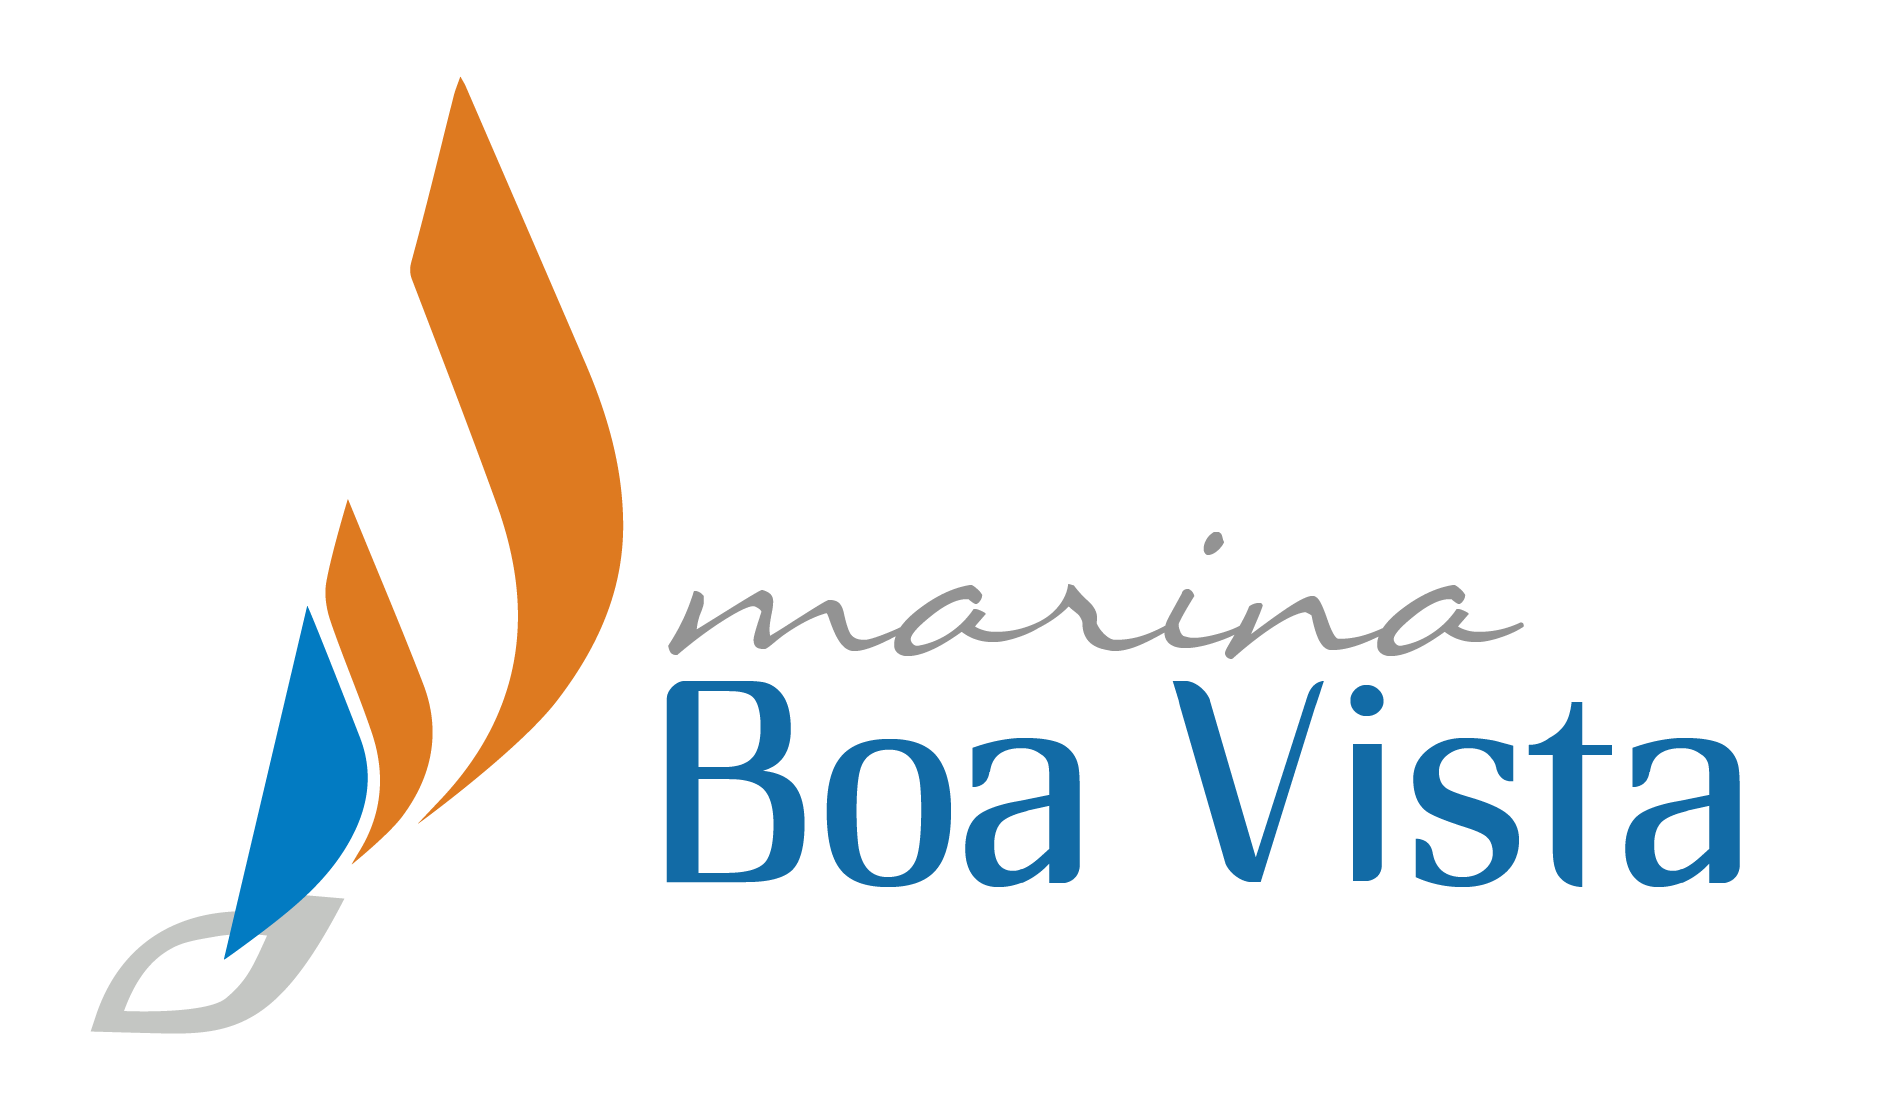 Marina Boa Vista - Conheça nossas embarcações, passeios e eventos!